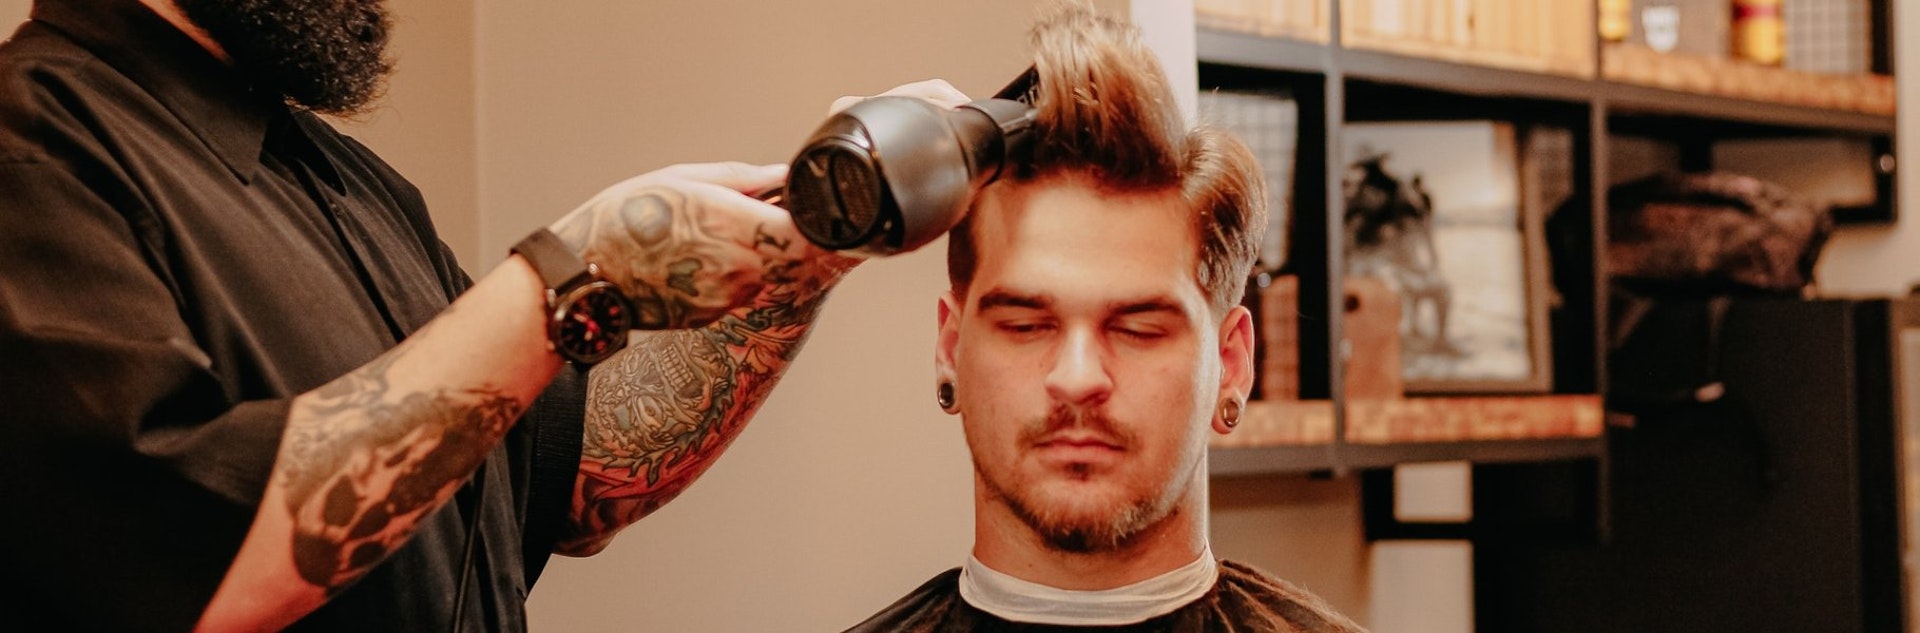 Descubre las últimas tendencias en cortes de pelo para hombre y anímate al cambio de look